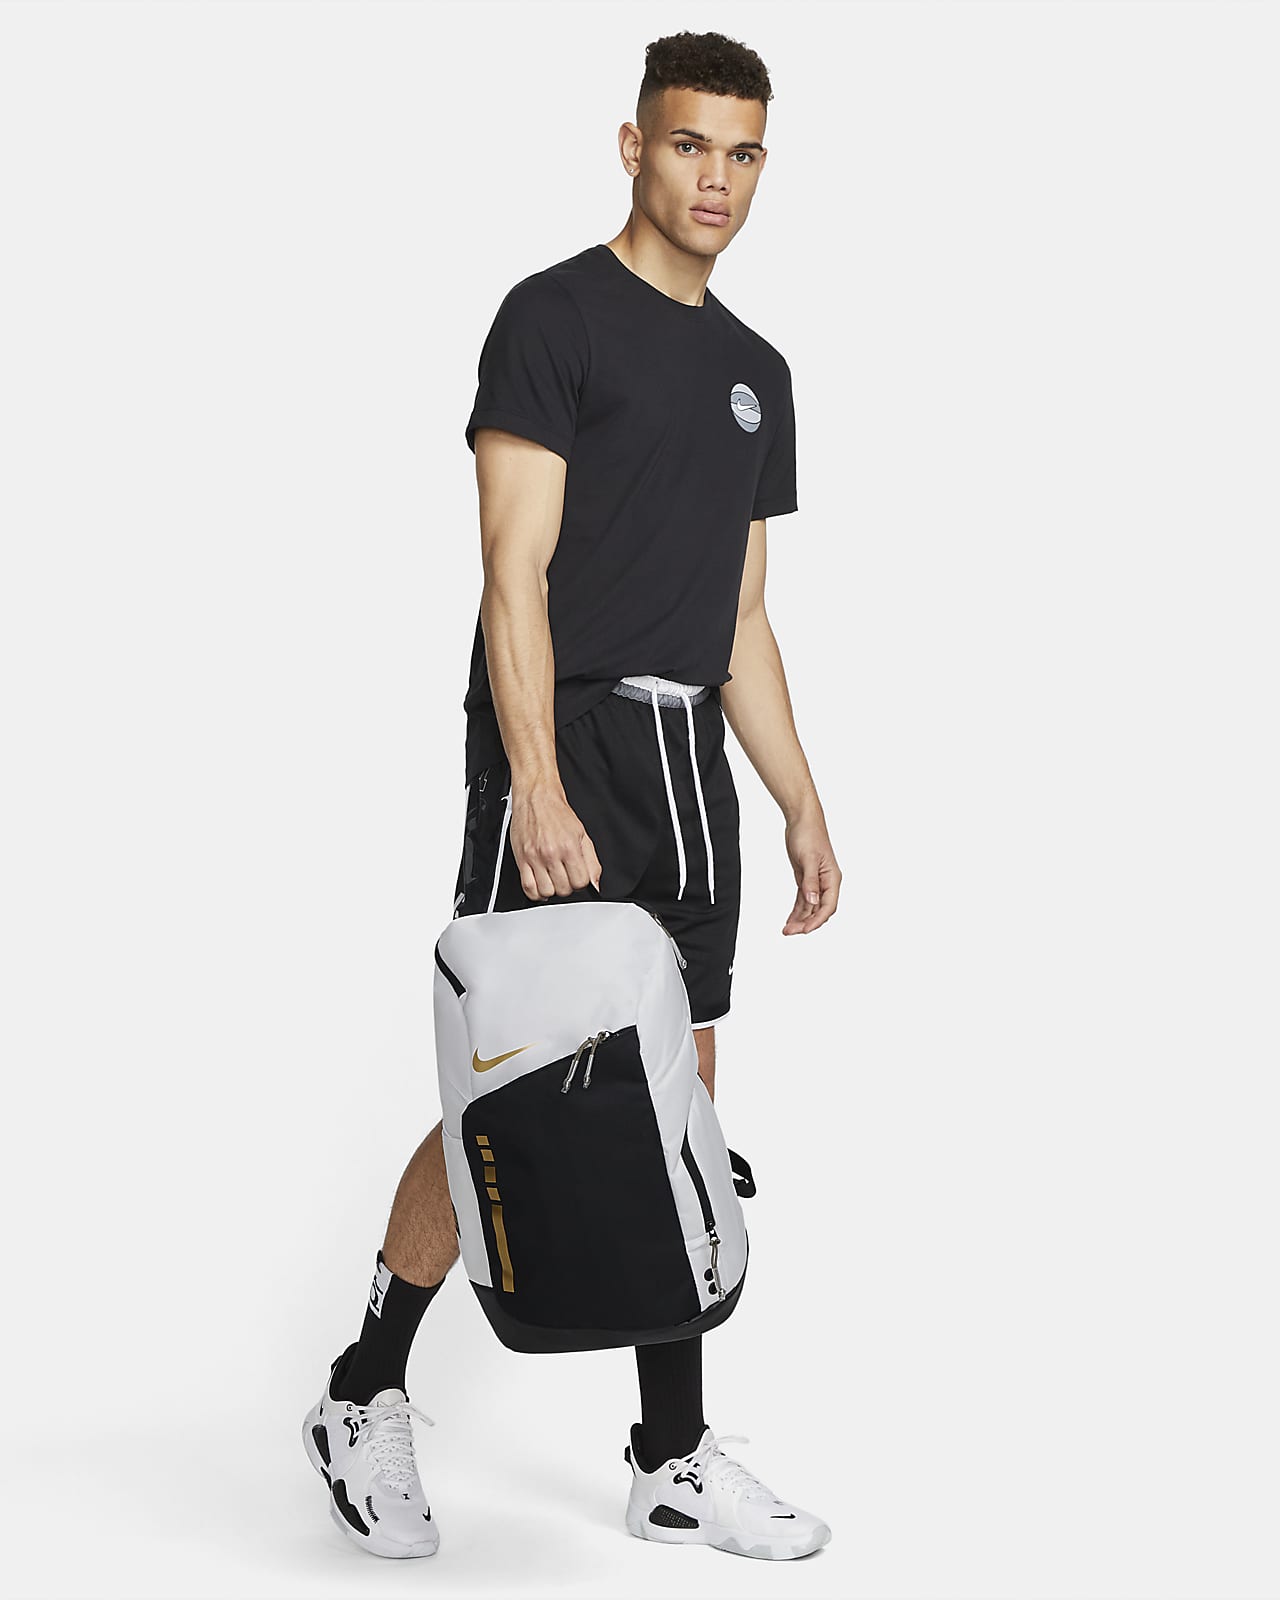 Nike Hoops Elite Backpack (32L). Nike.com